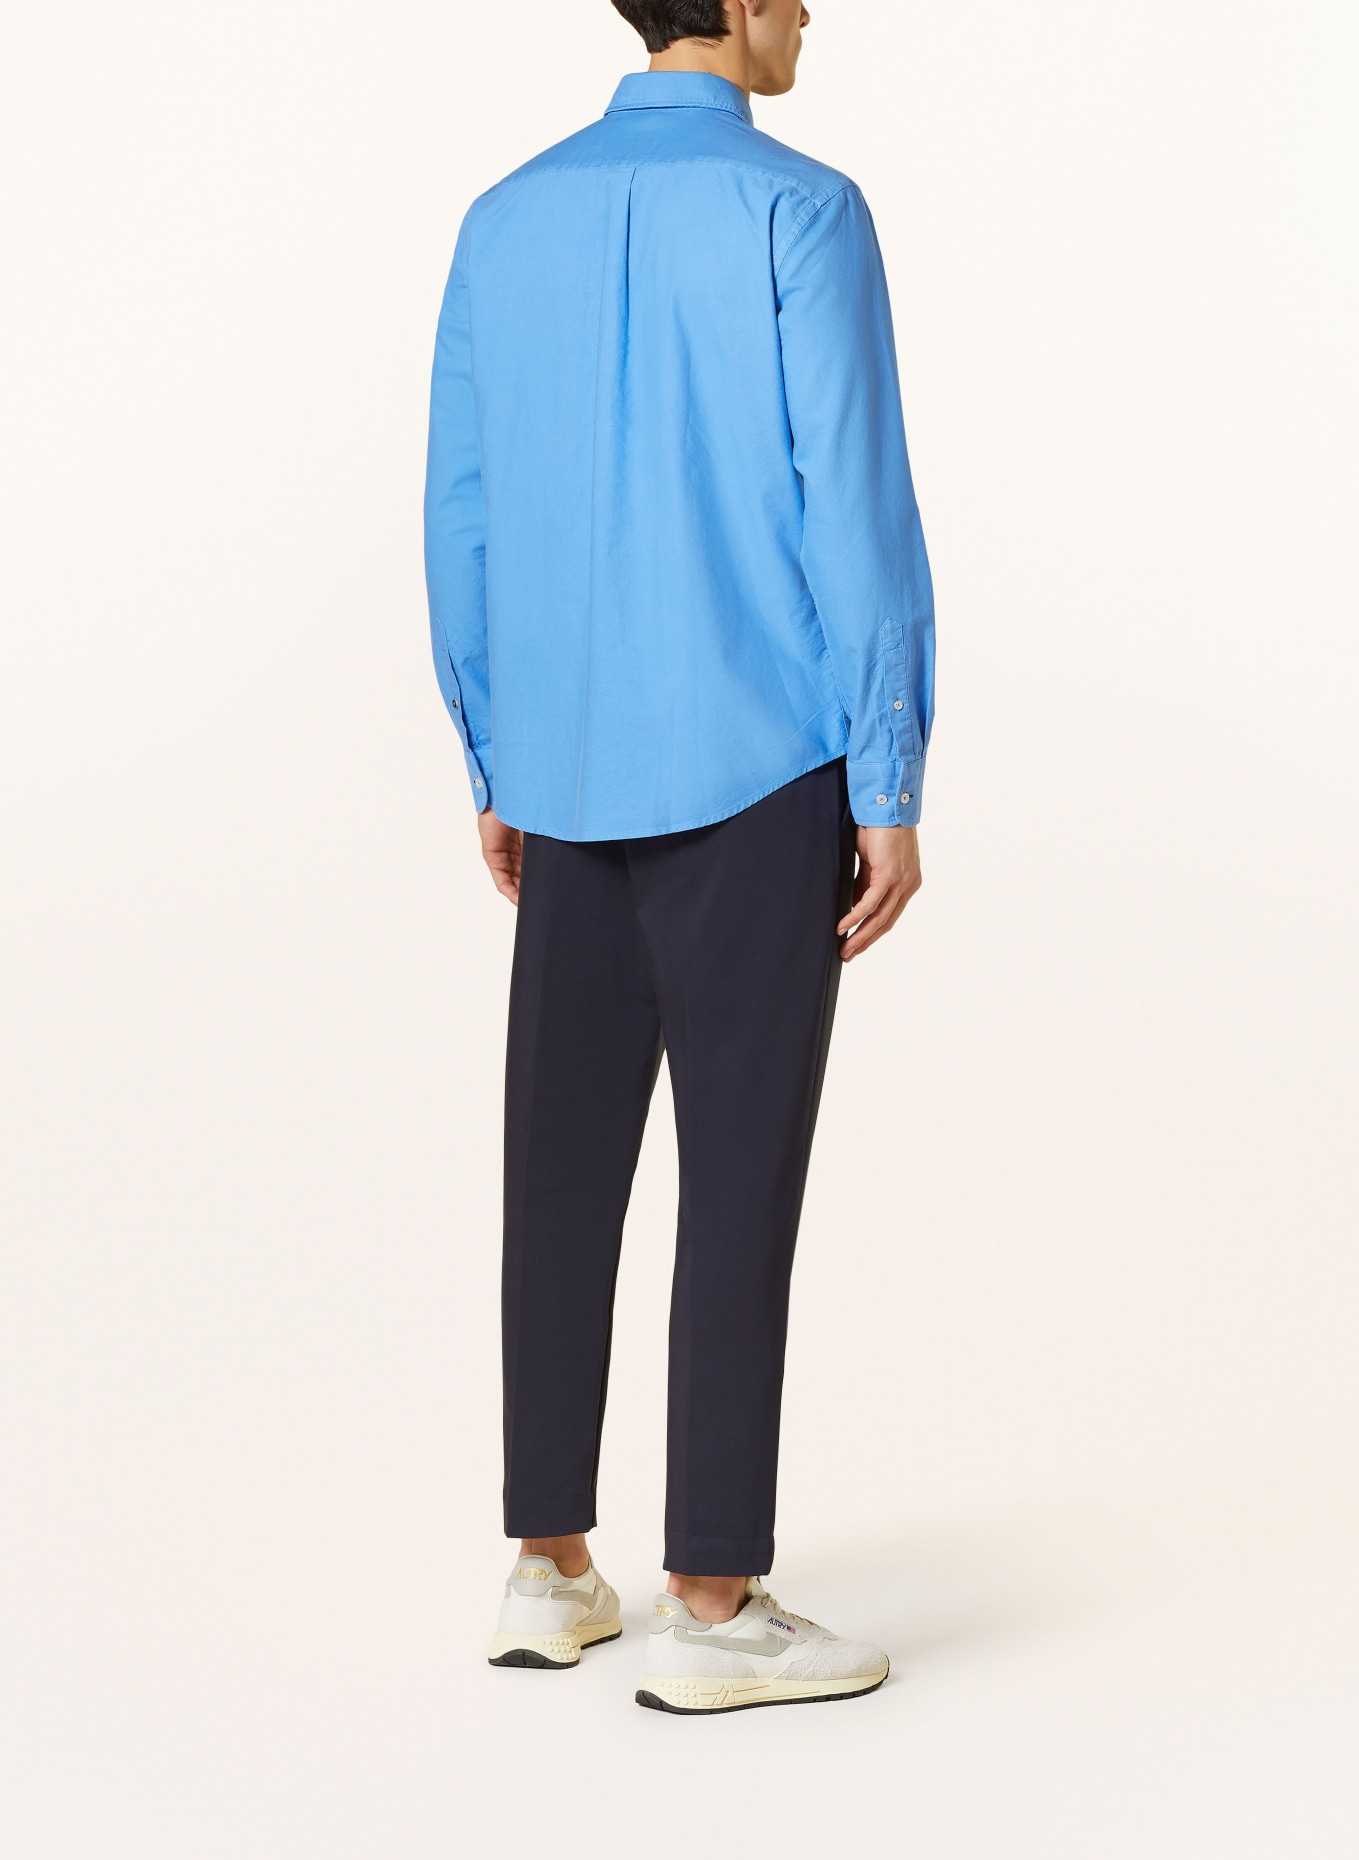 FYNCH-HATTON Shirt regular fit, Color: BLUE (Image 3)